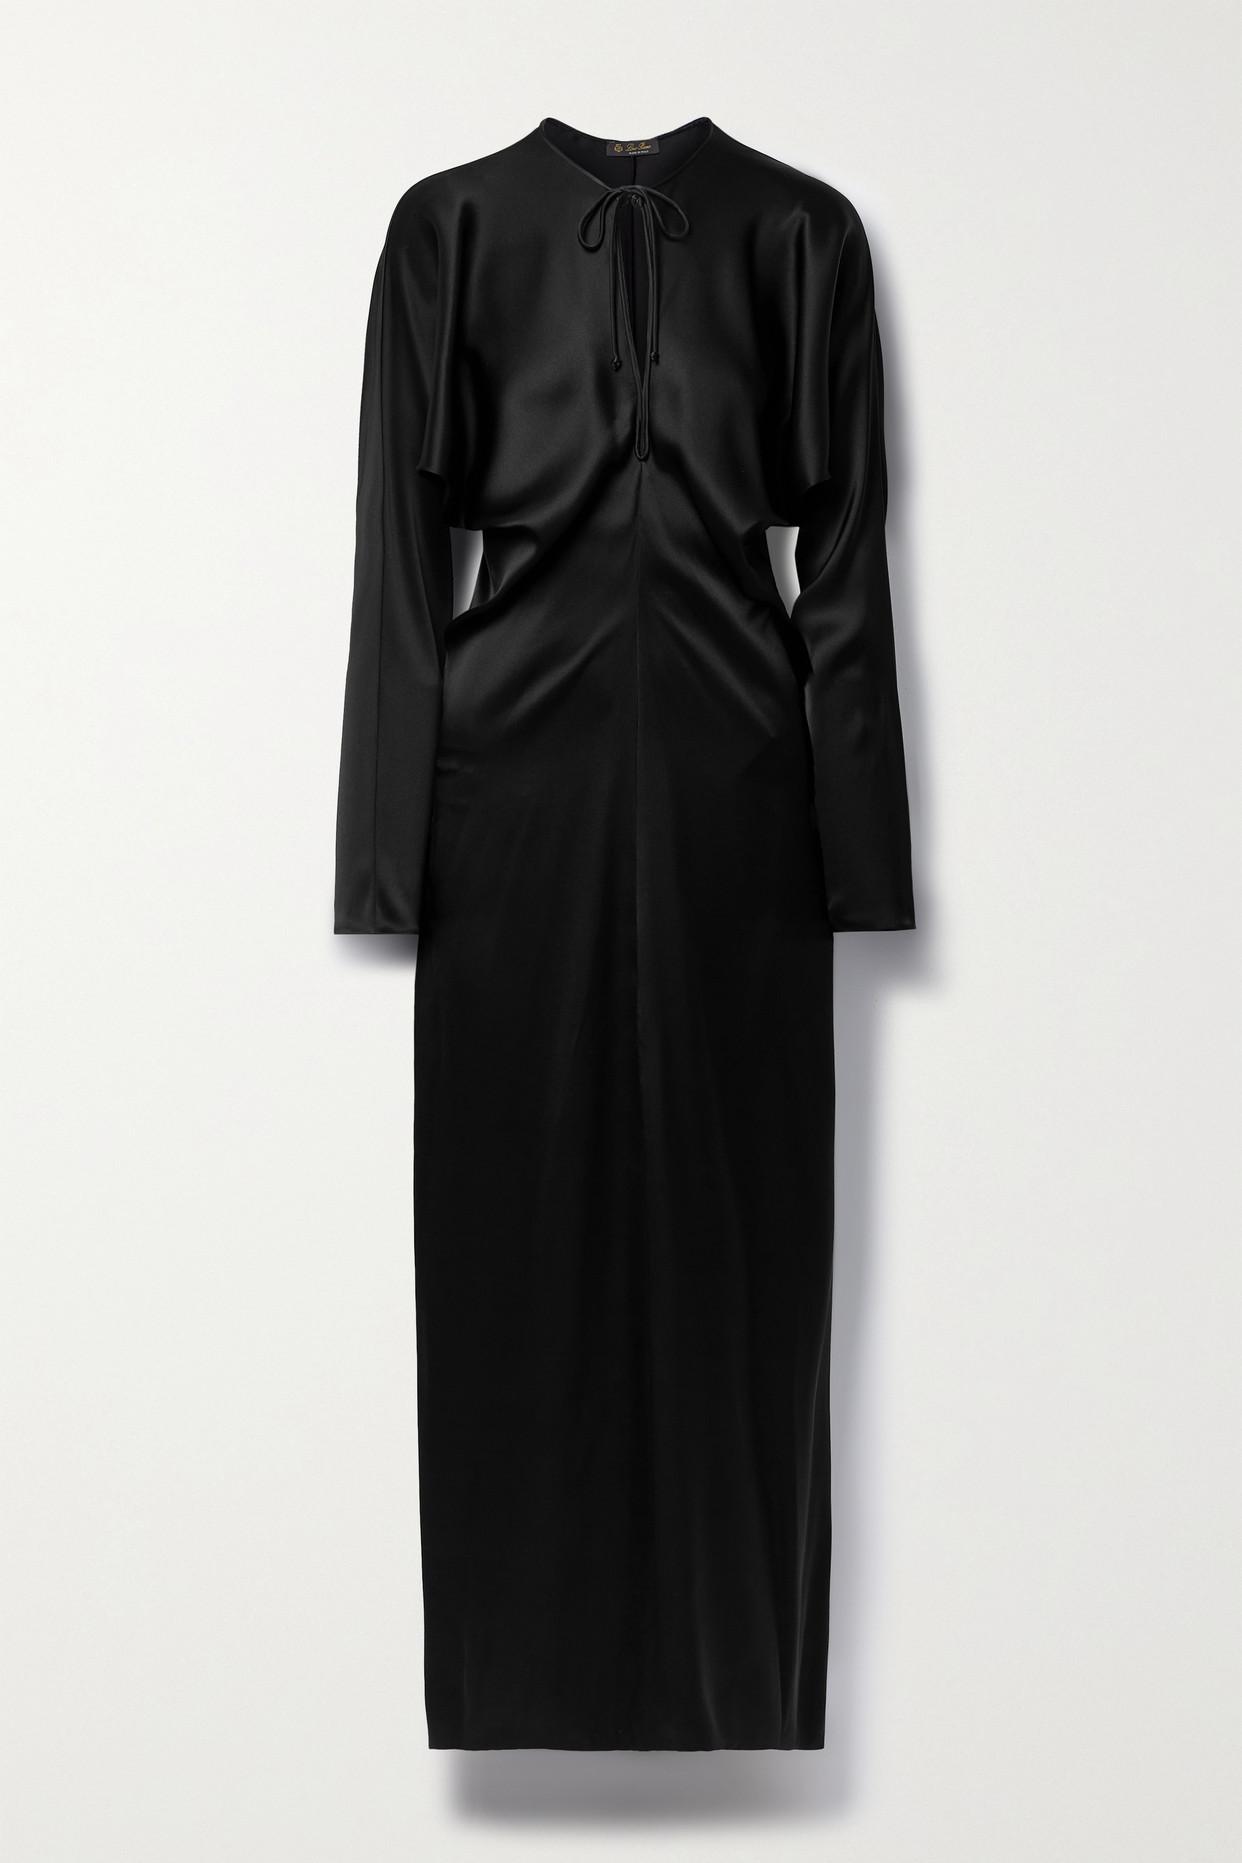 Loro Piana Silk-satin Maxi Dress in Black | Lyst